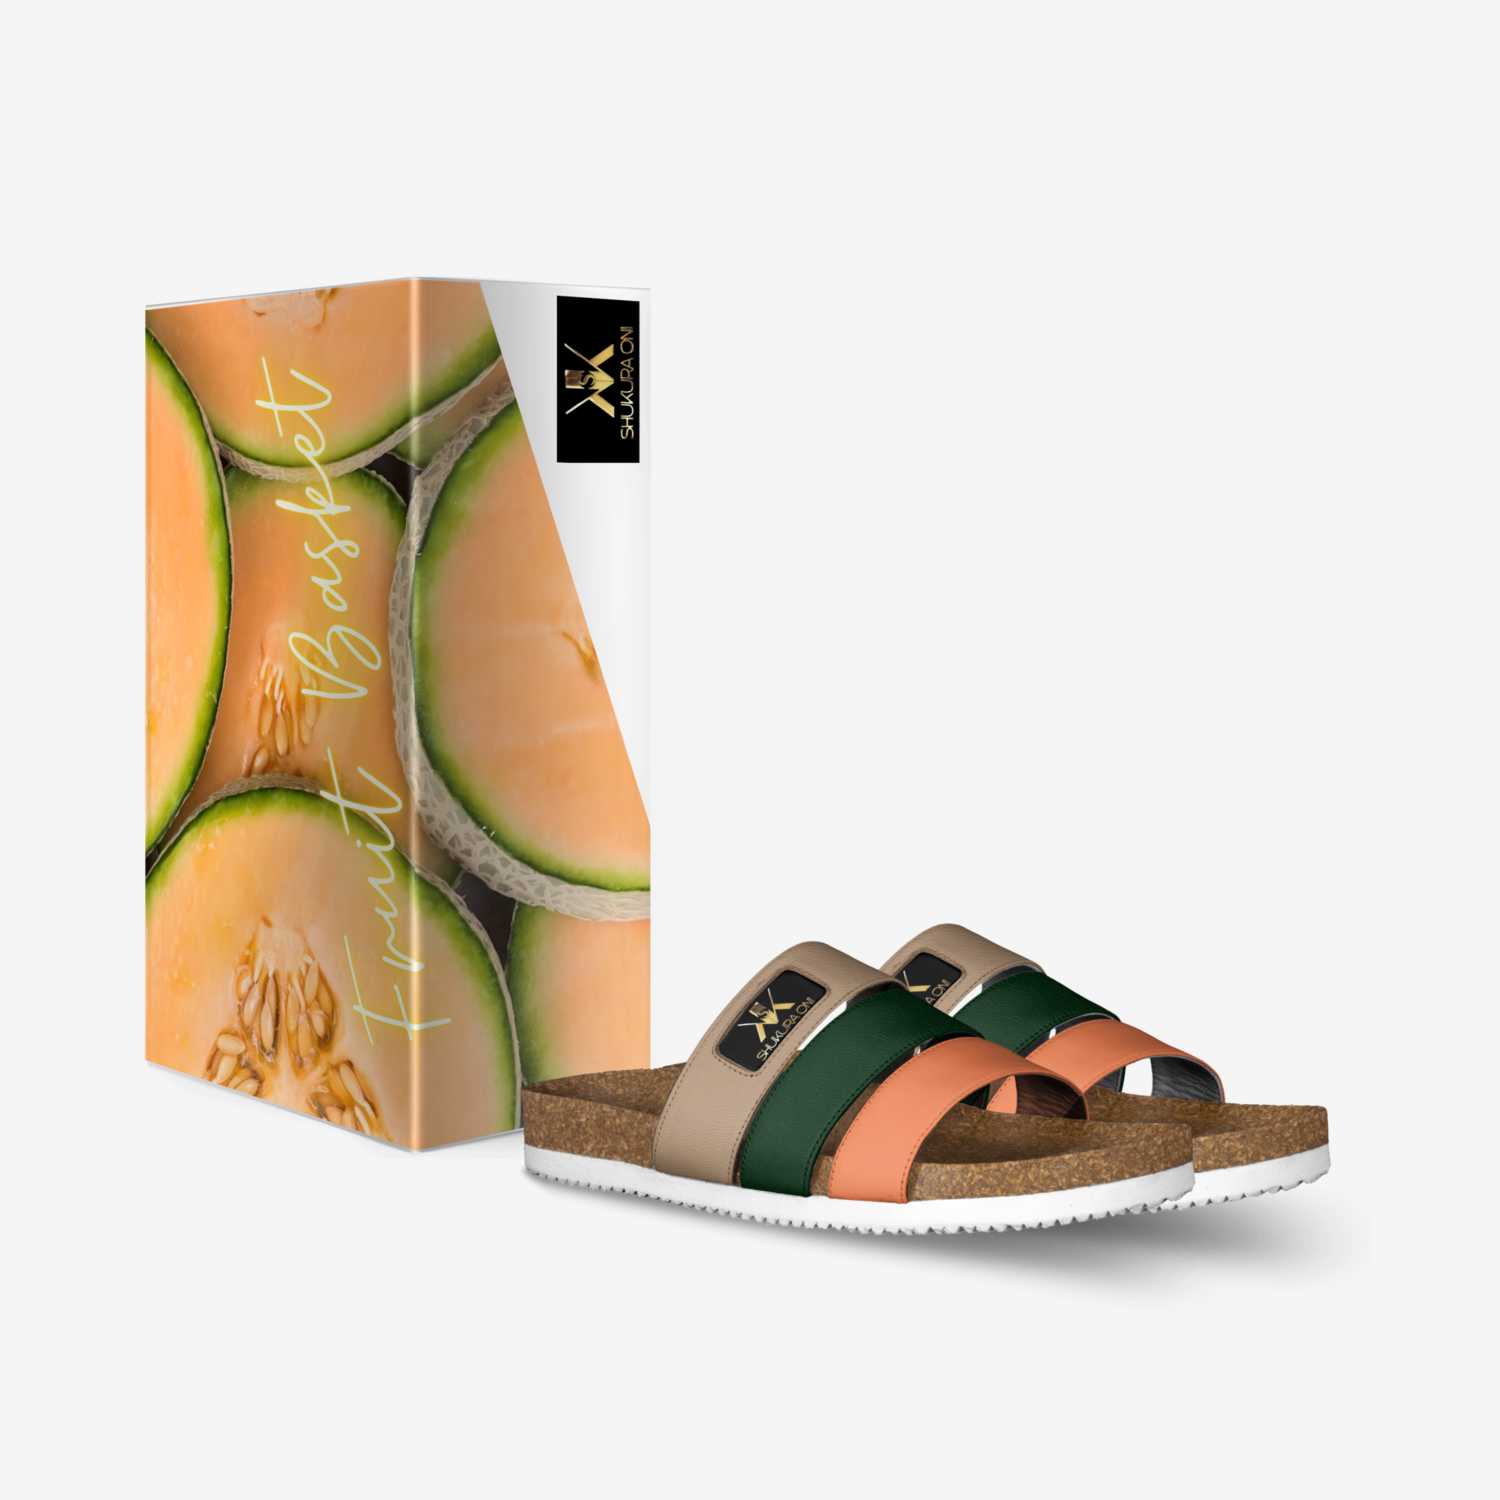 Cantaloupe custom made in Italy shoes by Shukura Oni | Box view